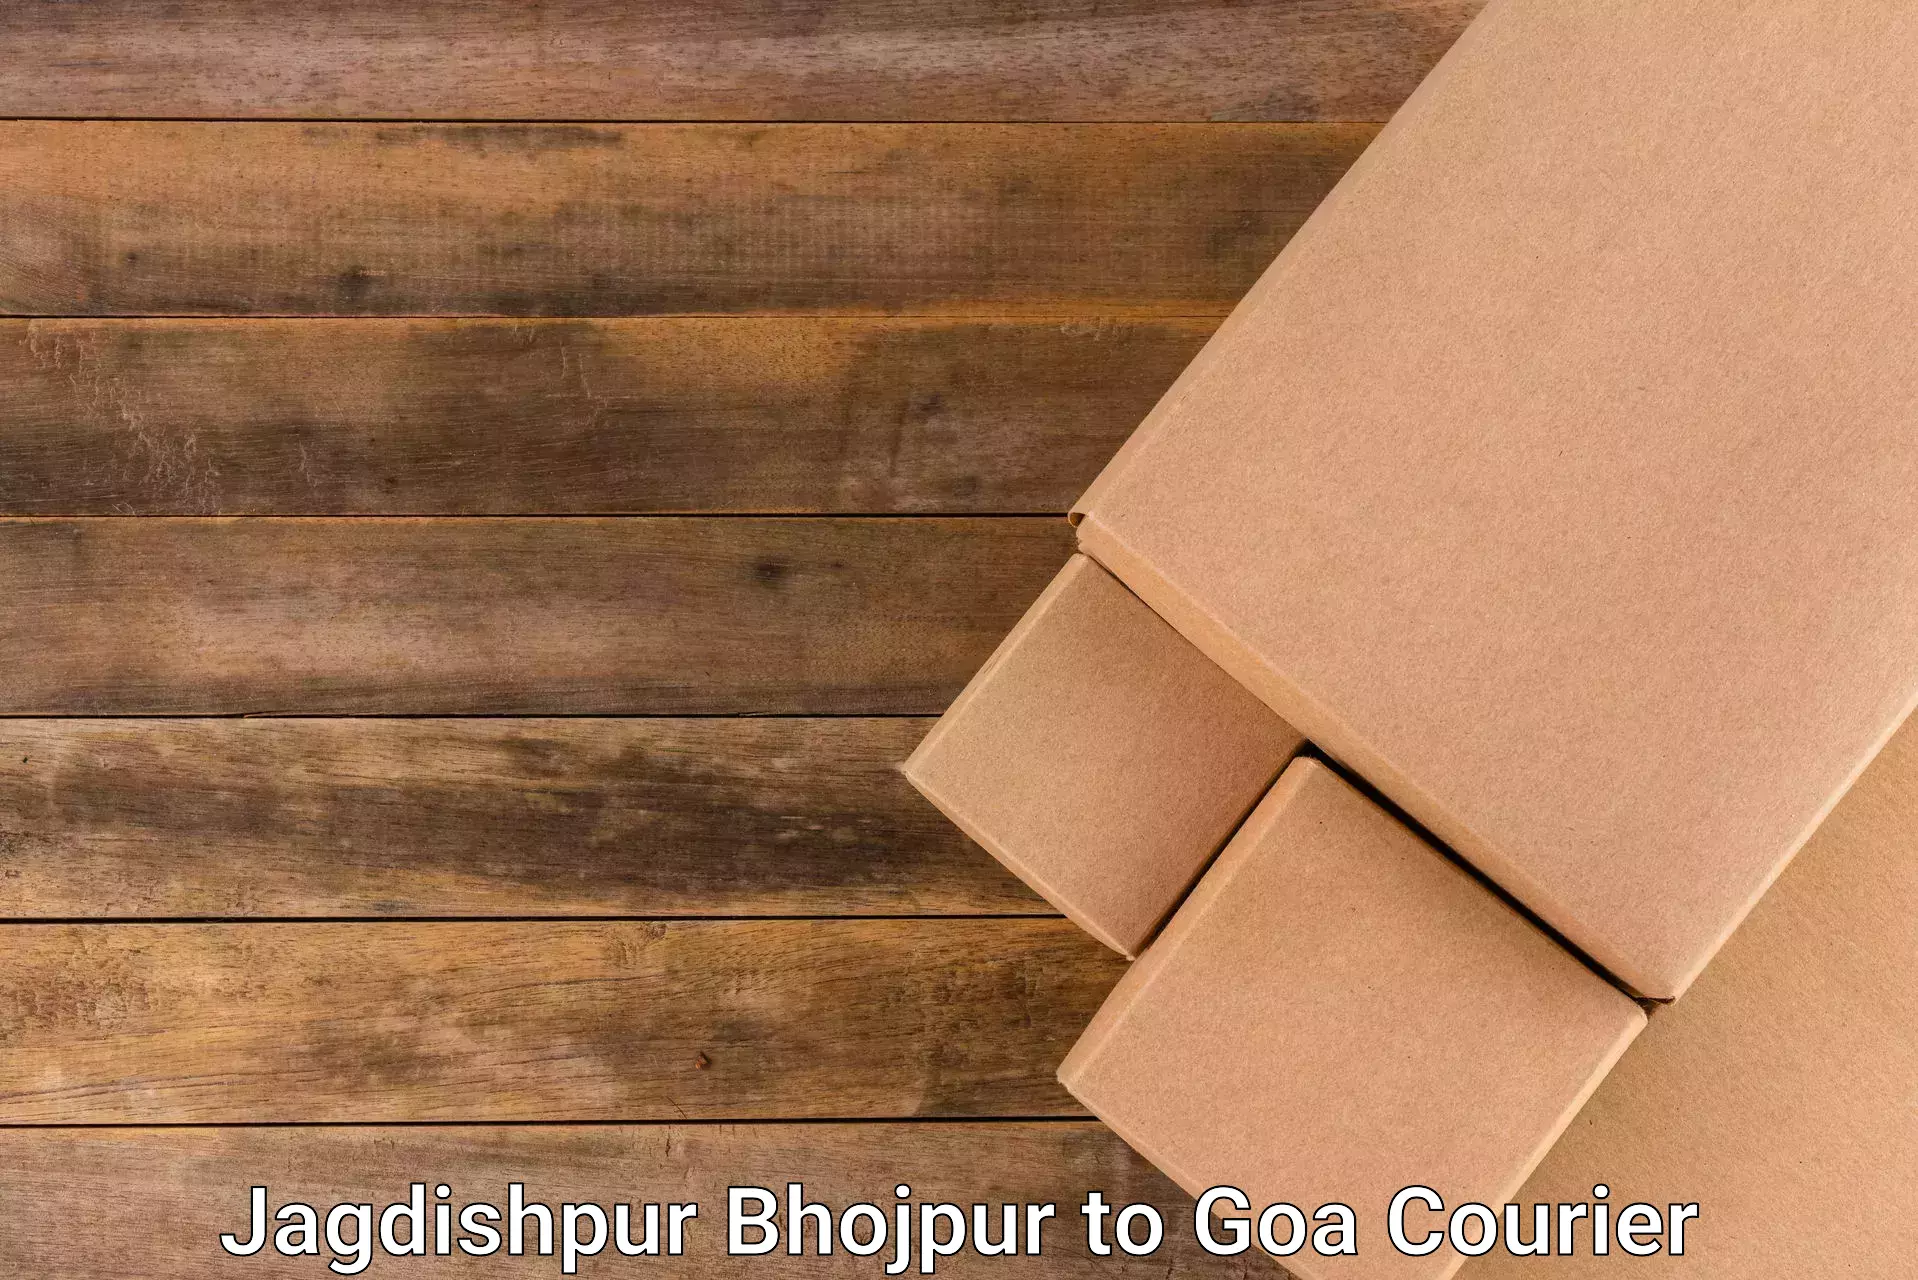 Pharmaceutical courier Jagdishpur Bhojpur to South Goa